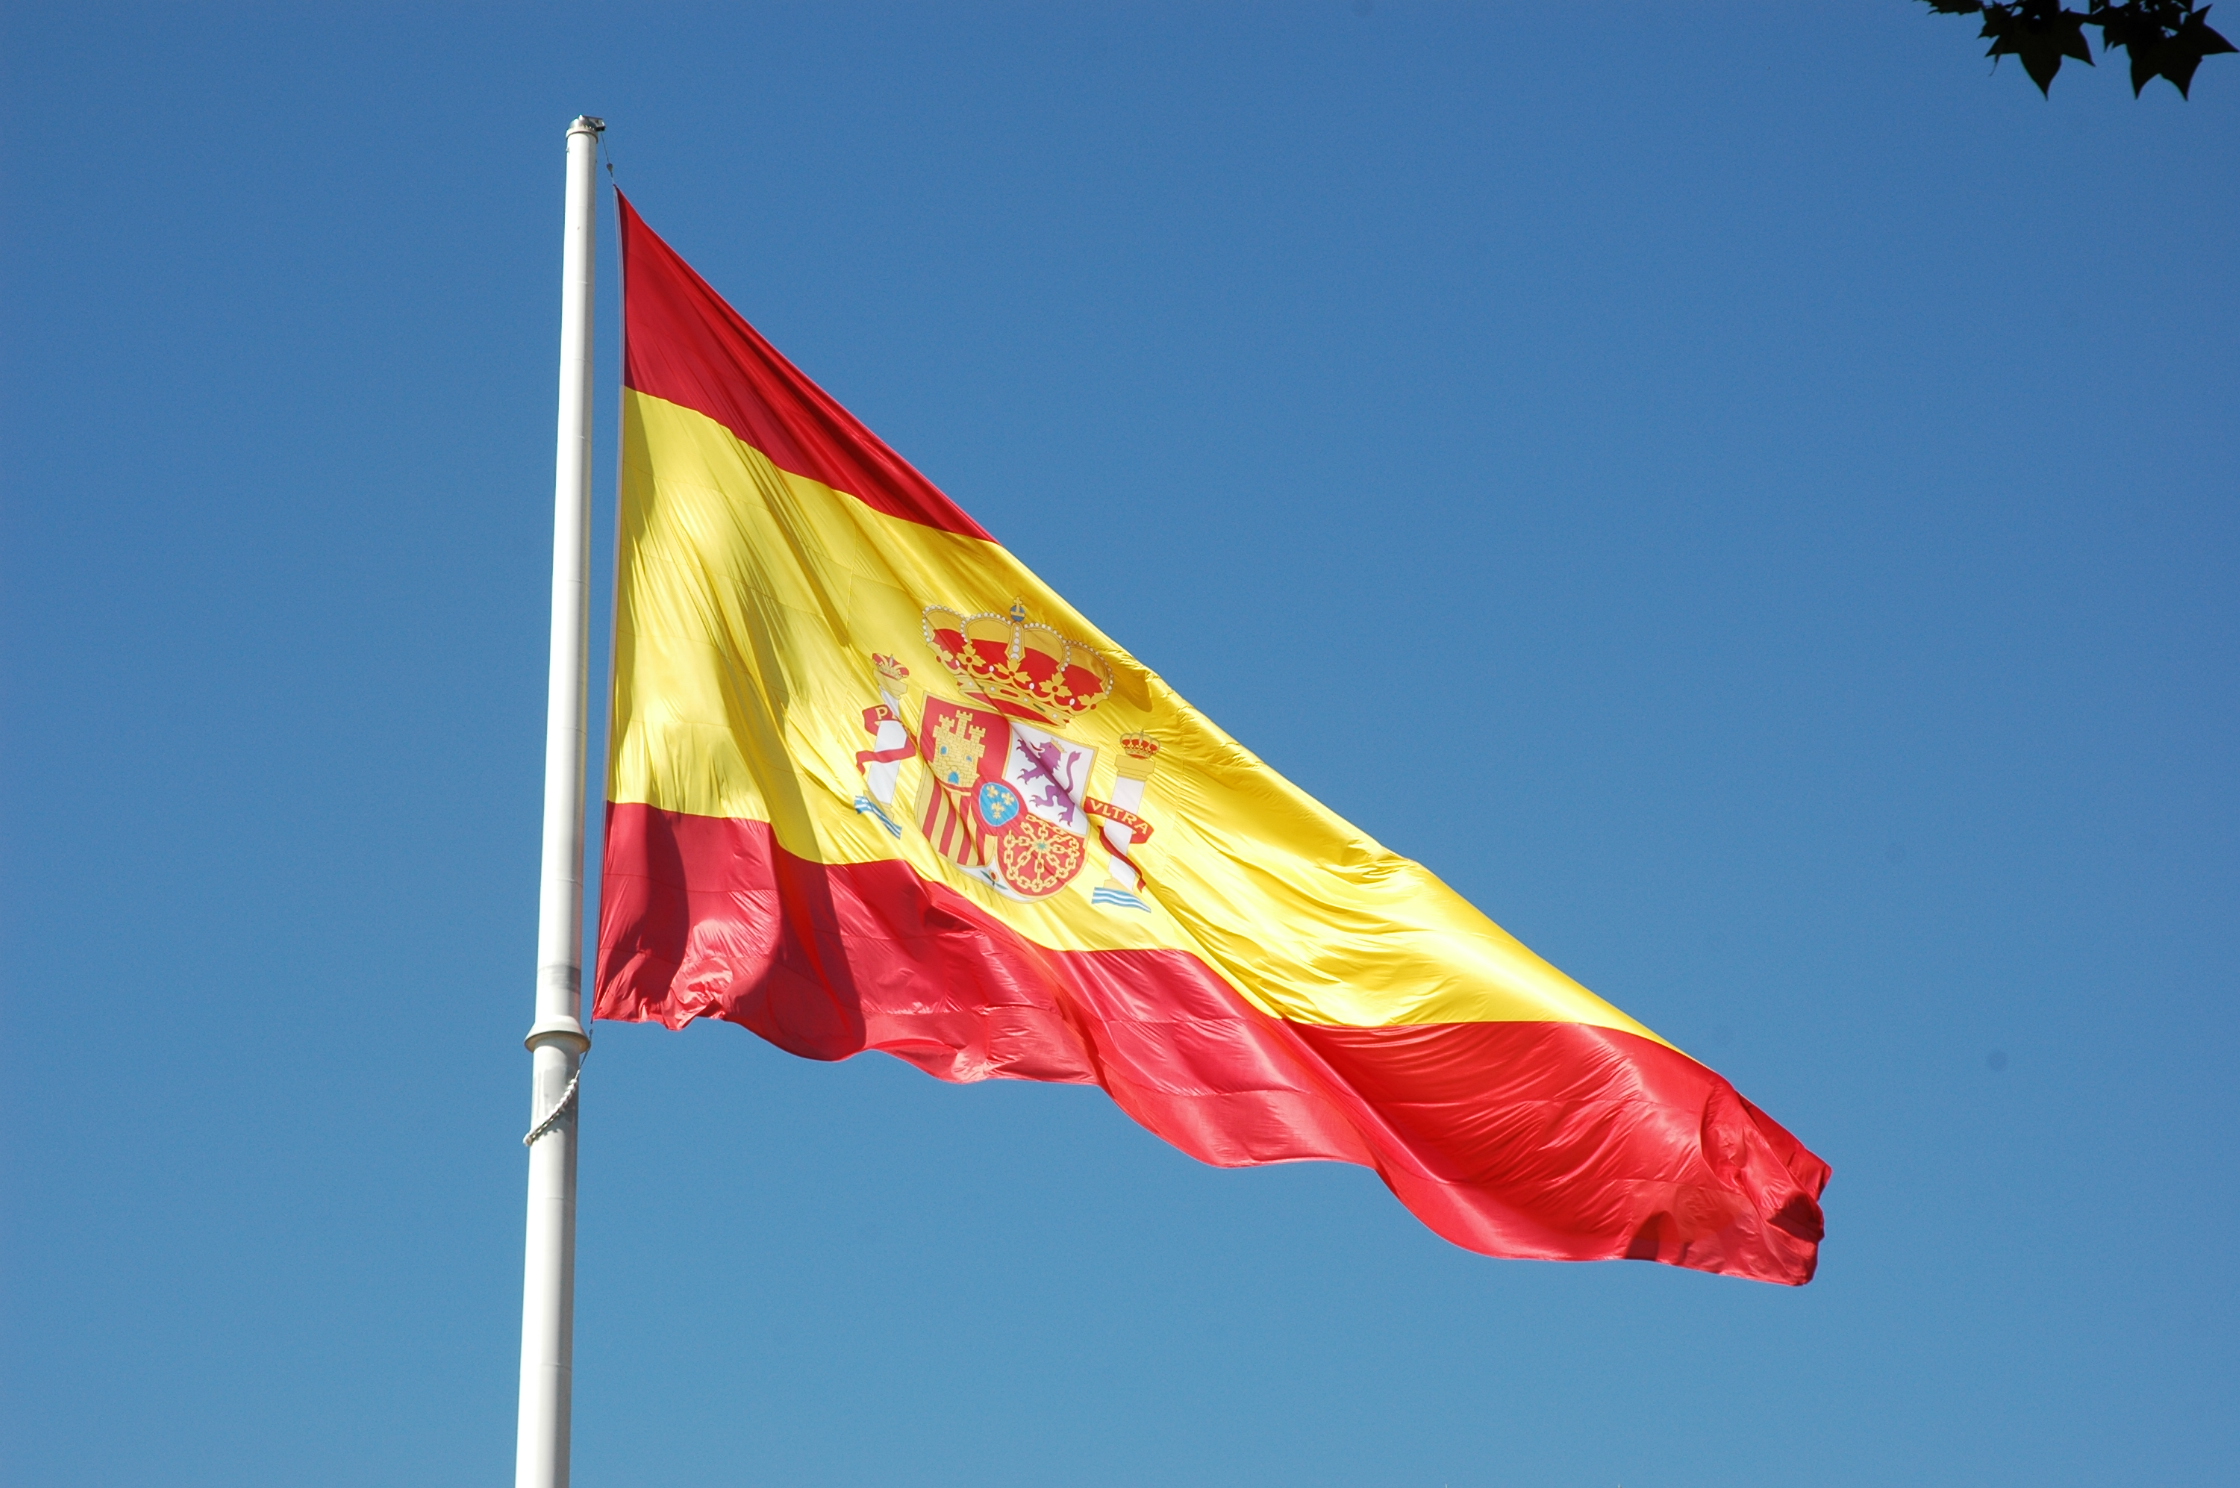 MiFID II Directiva en España